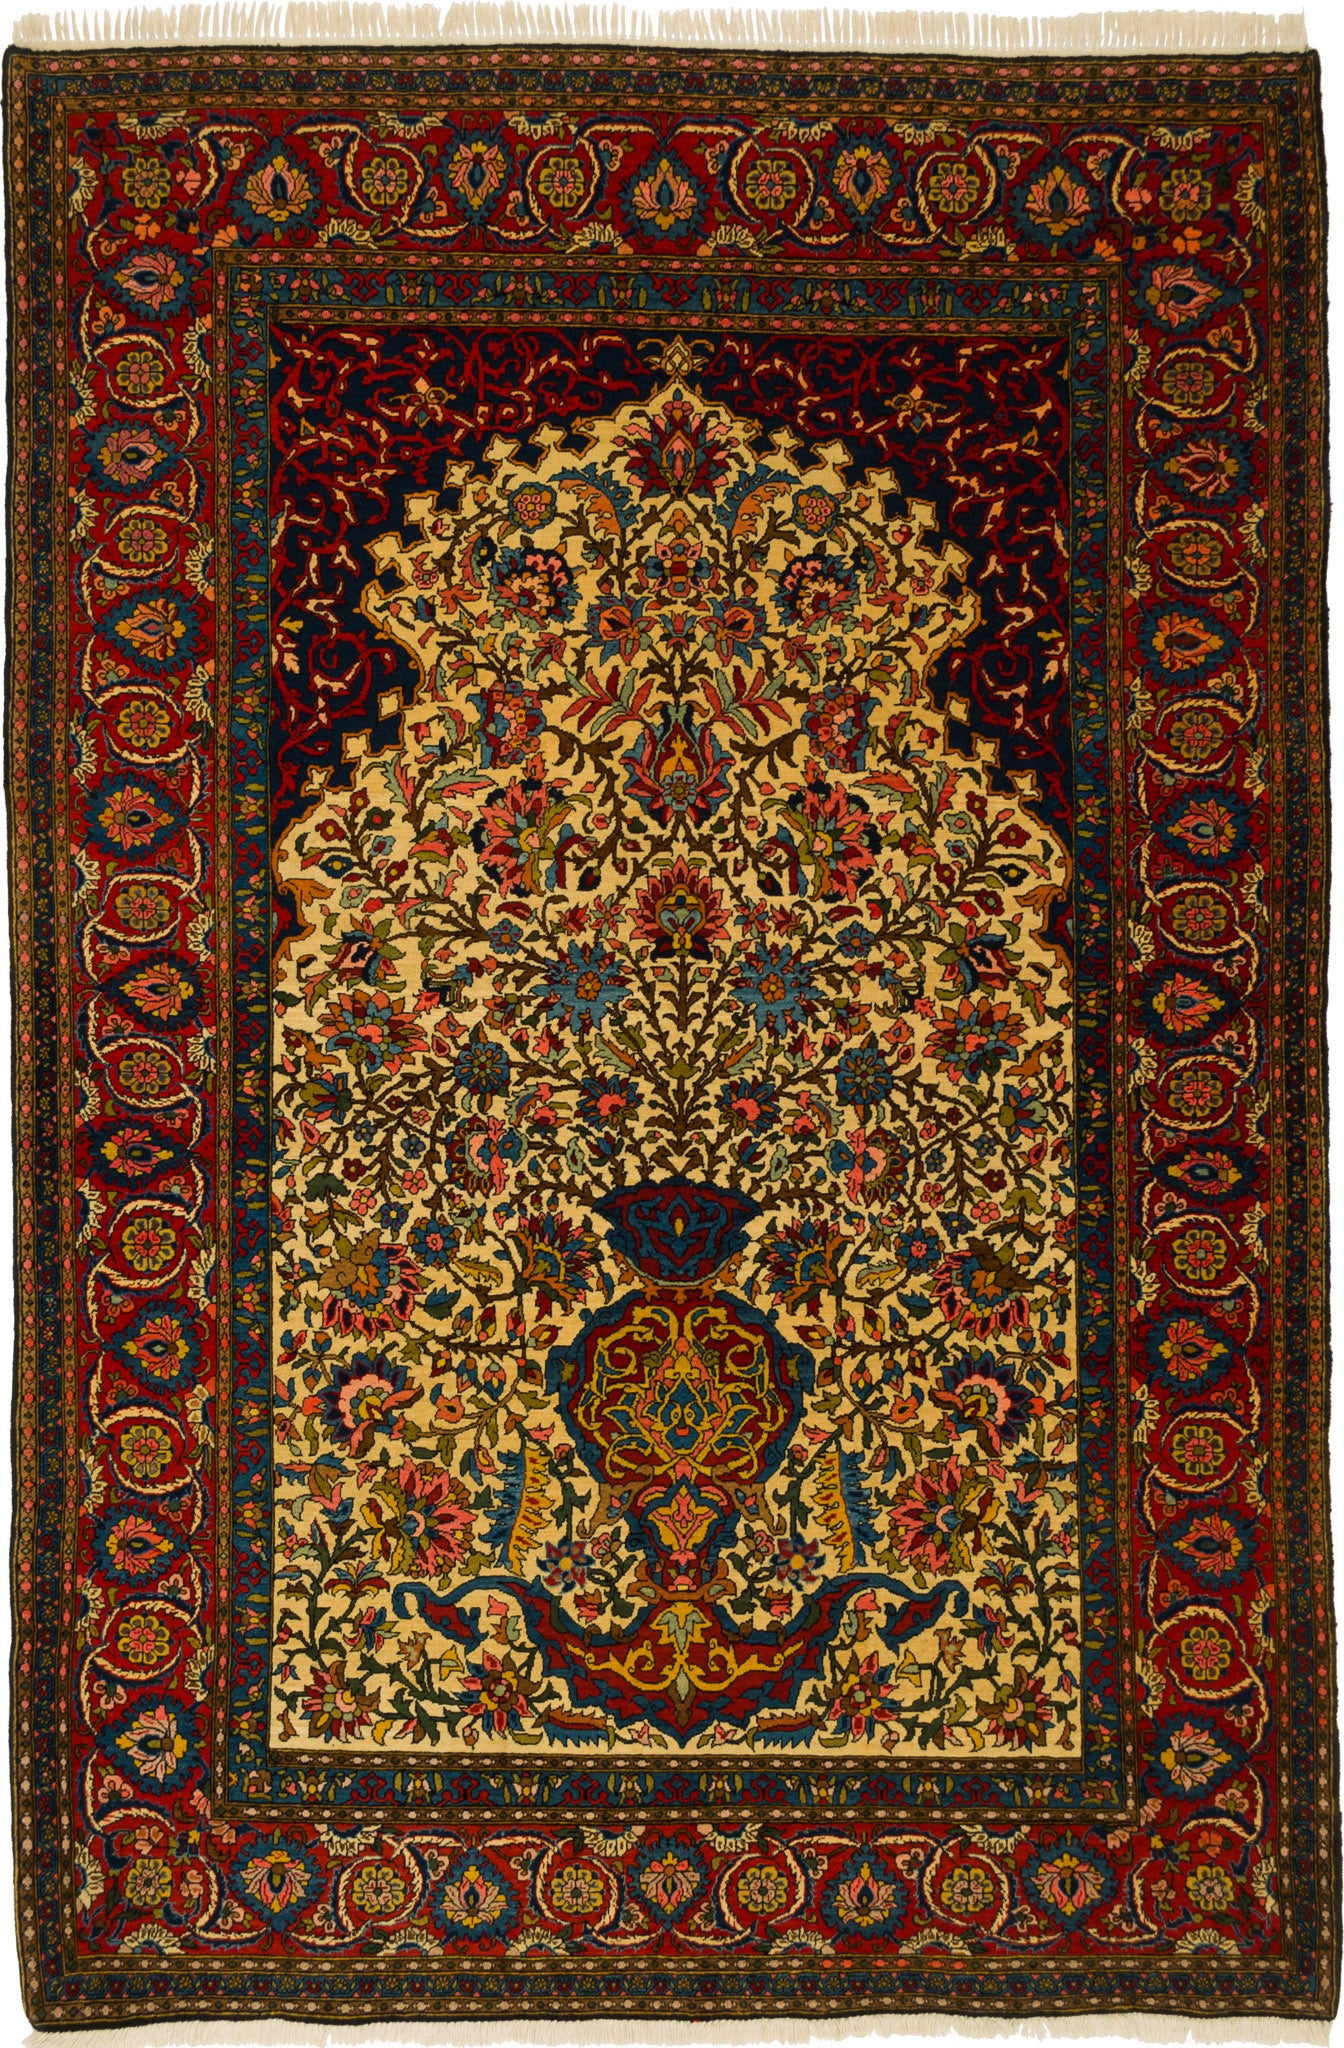 Bachtiar, 217 × 147 cm